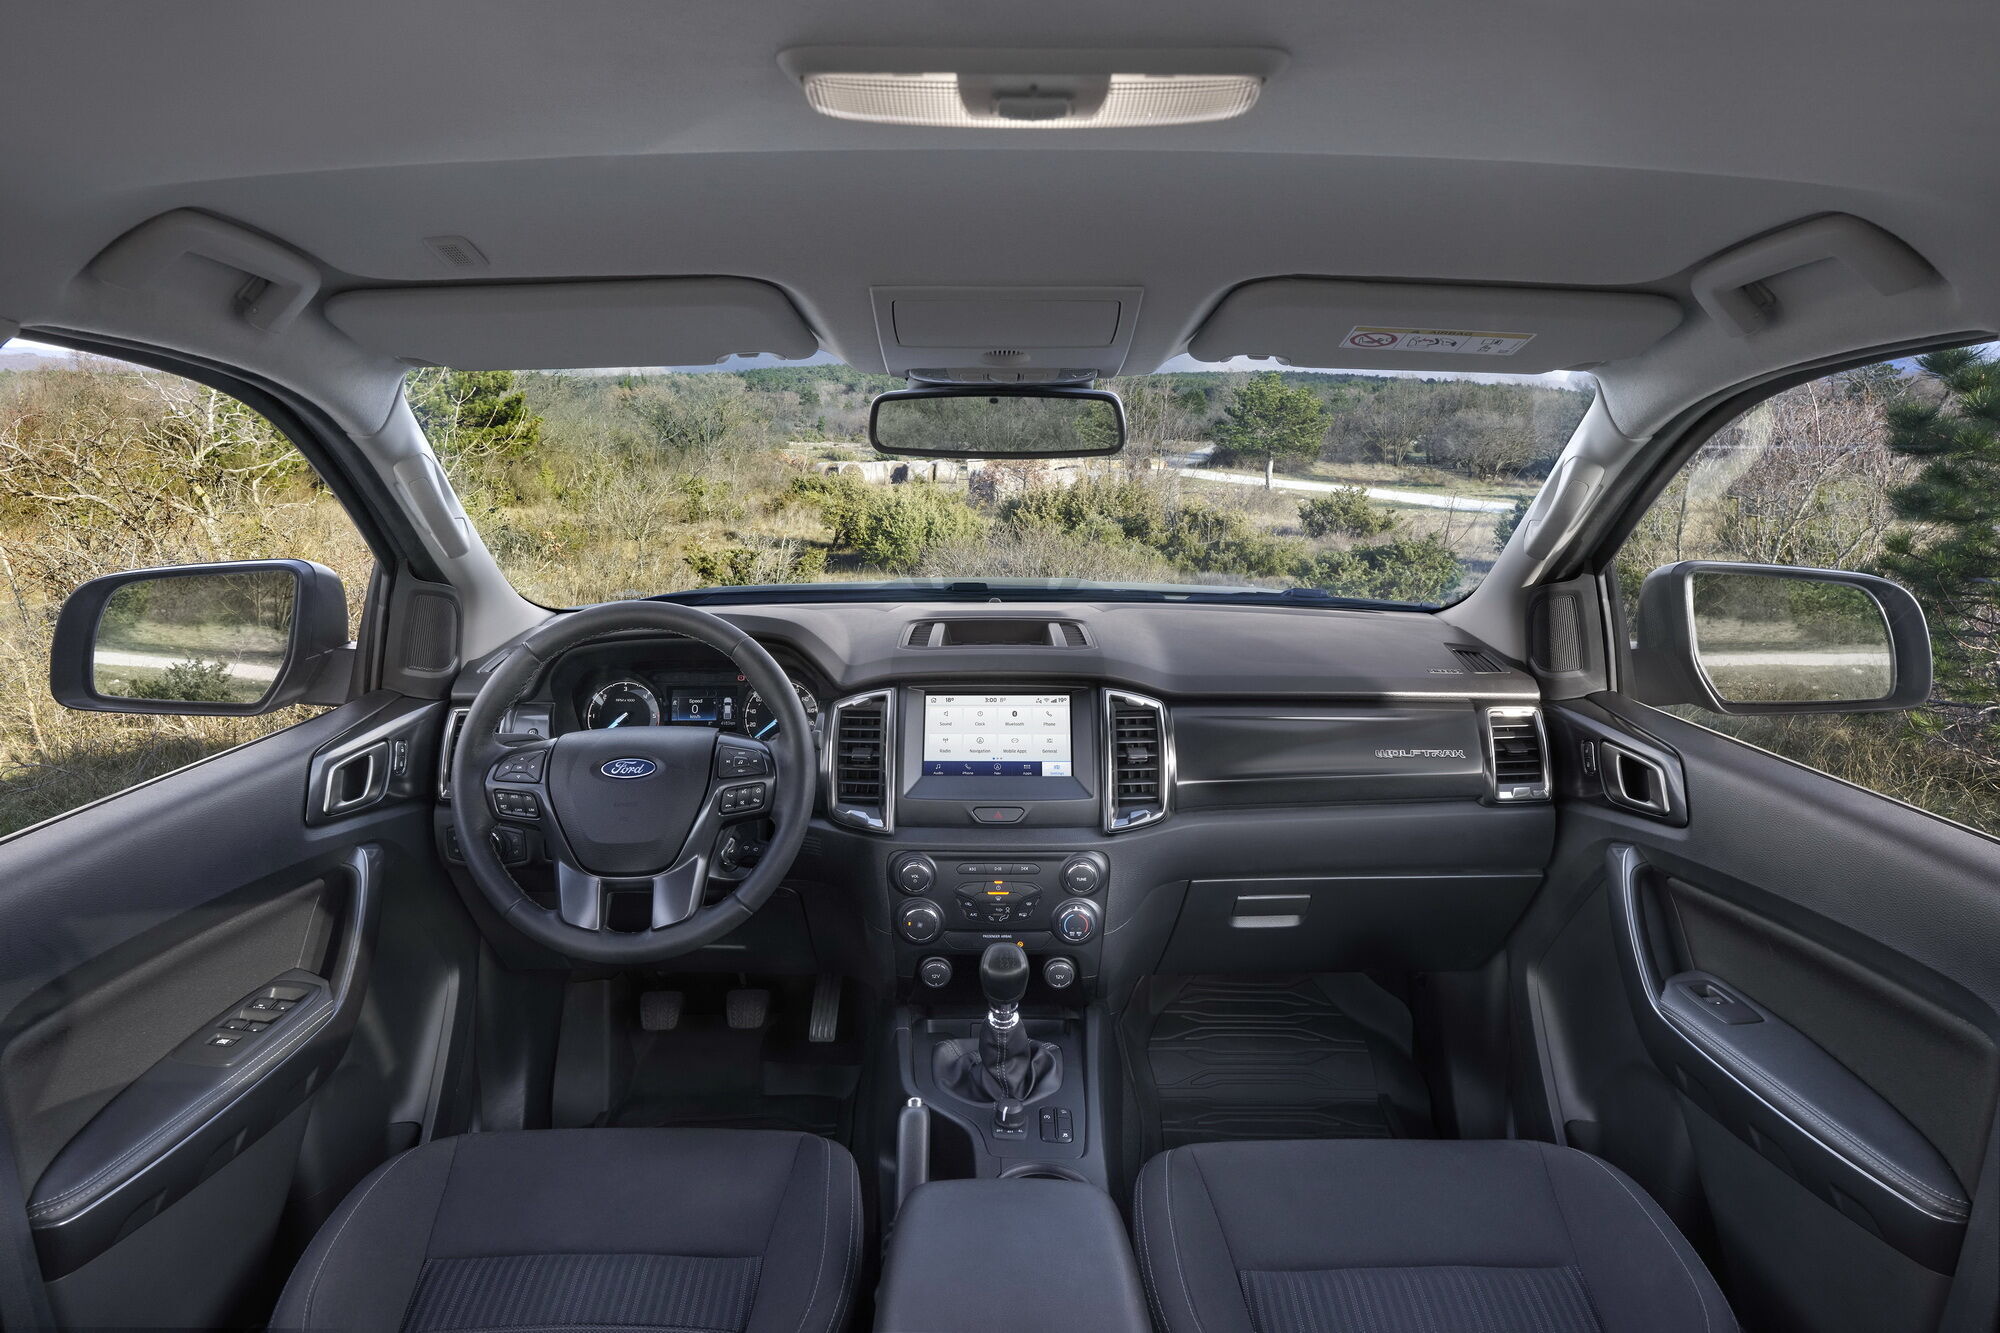 Информационно-навигационная система Ford SYNC 3 с сенсорным экраном диагональю 8 дюймов входит в базовую комплектацию